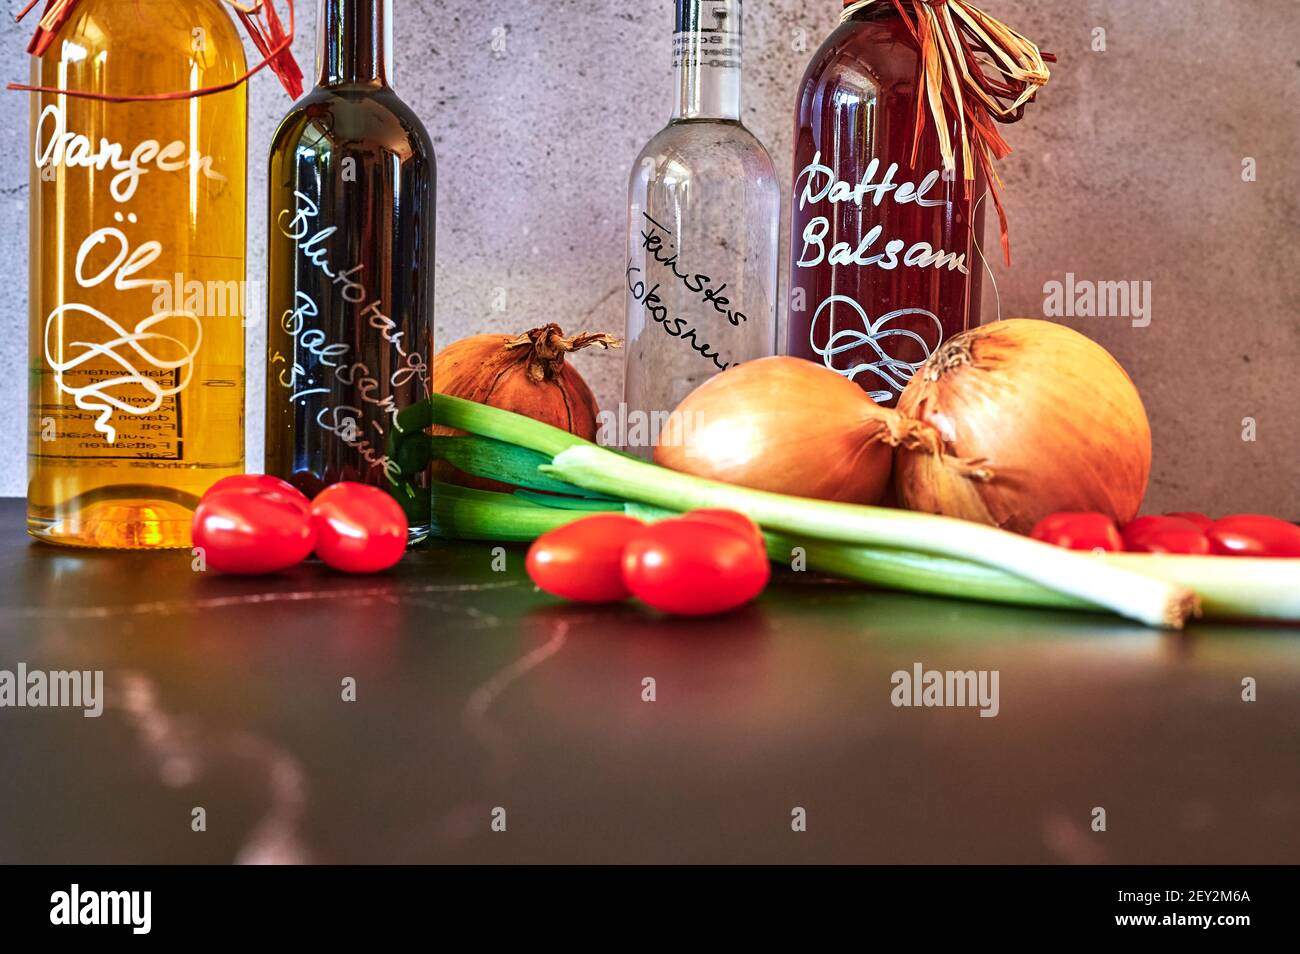 Berlin, Allemagne - 5 mars 2021 : diverses huiles telles que l'huile balsamique de date et l'huile d'orange avec des ingrédients frais. Banque D'Images